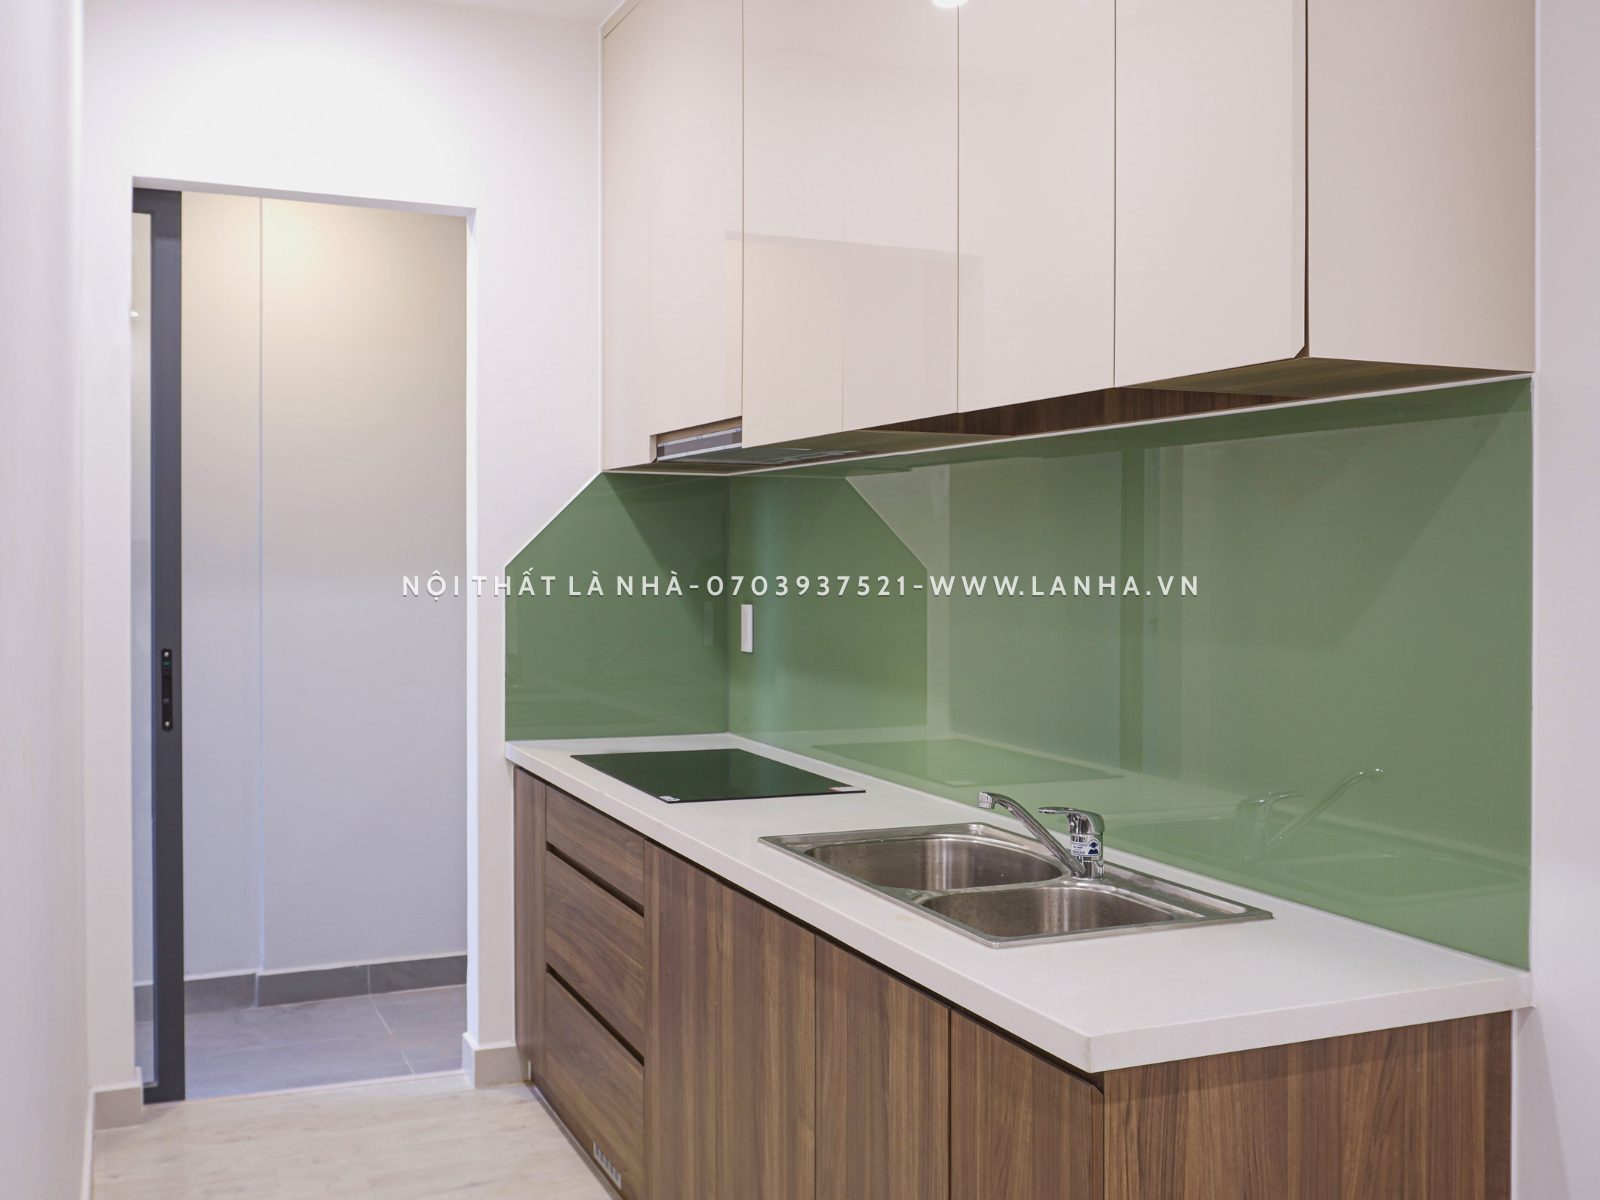 Mẫu tủ bếp nhỏ gọn cho căn bếp căn hộ chung cư SG Riverside Complex 45m2